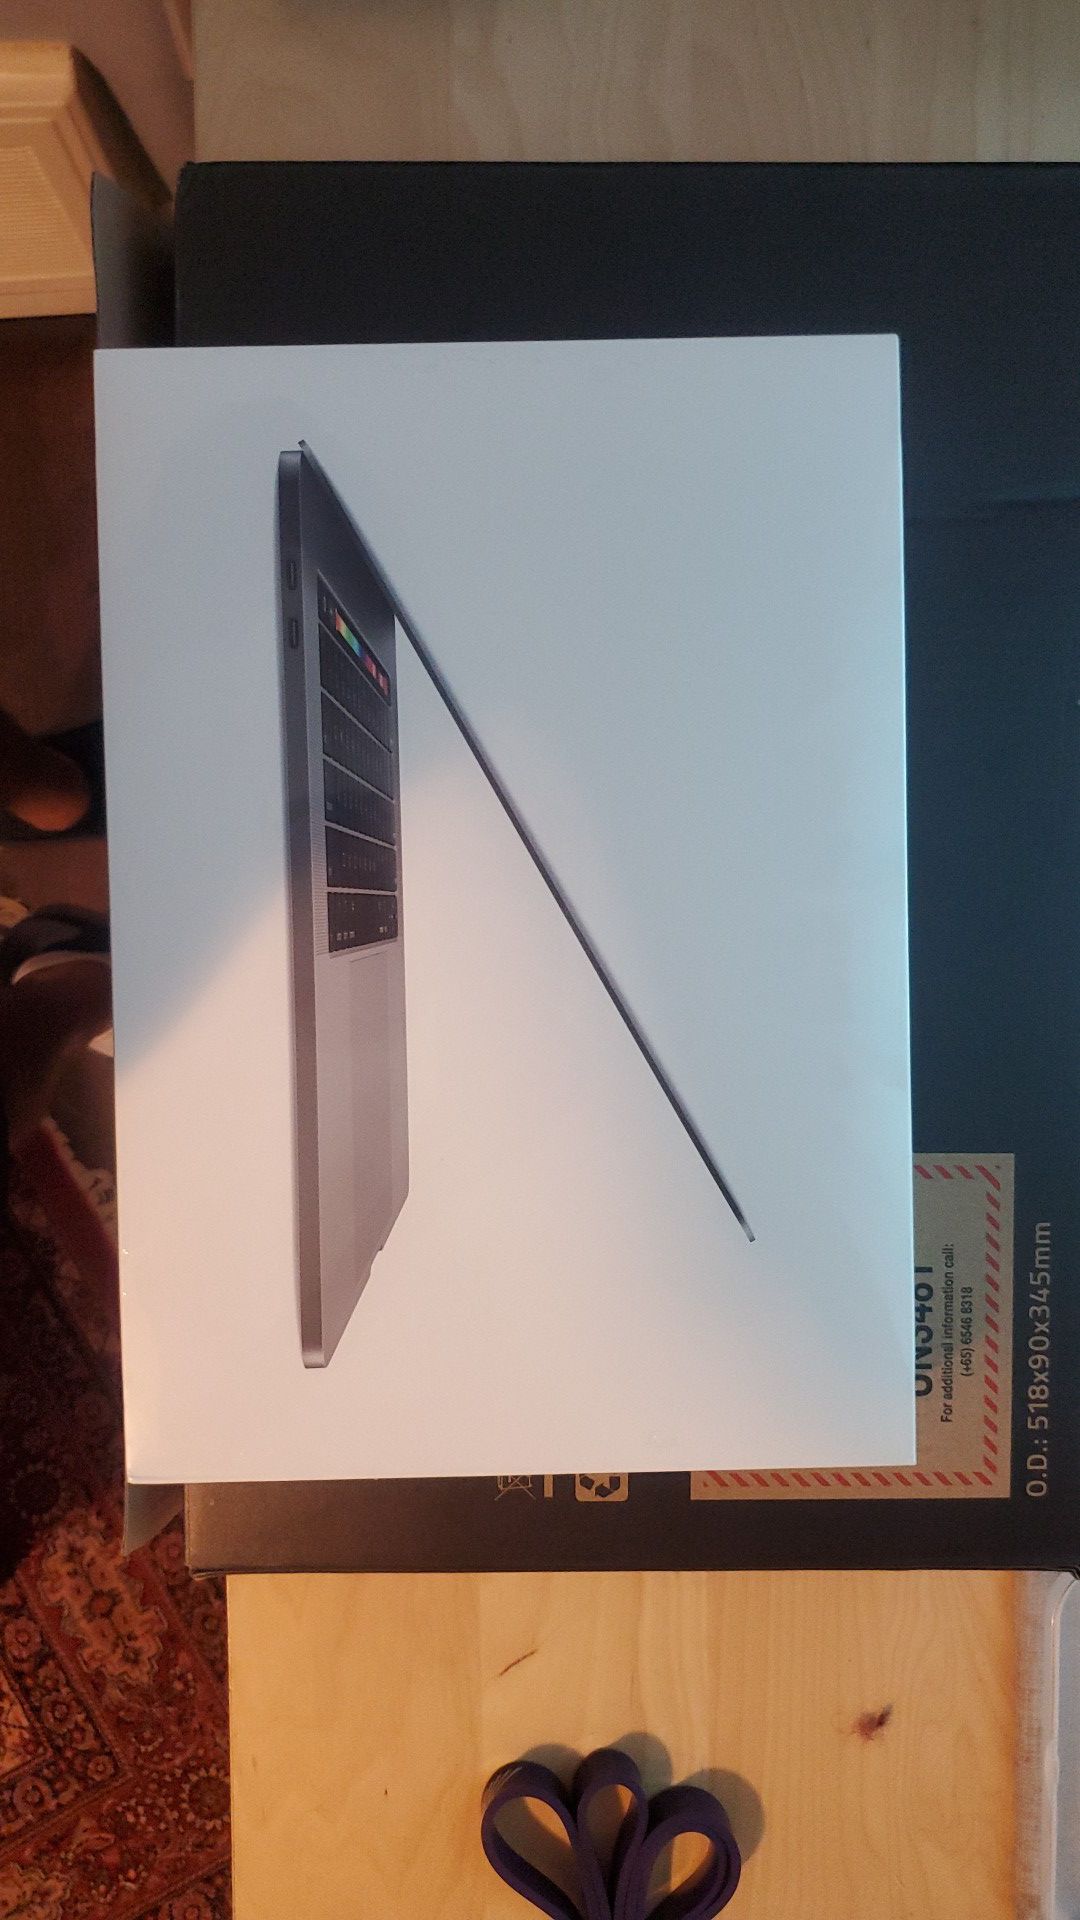 Macbook Pro 15in. Latest Model 2019 i9